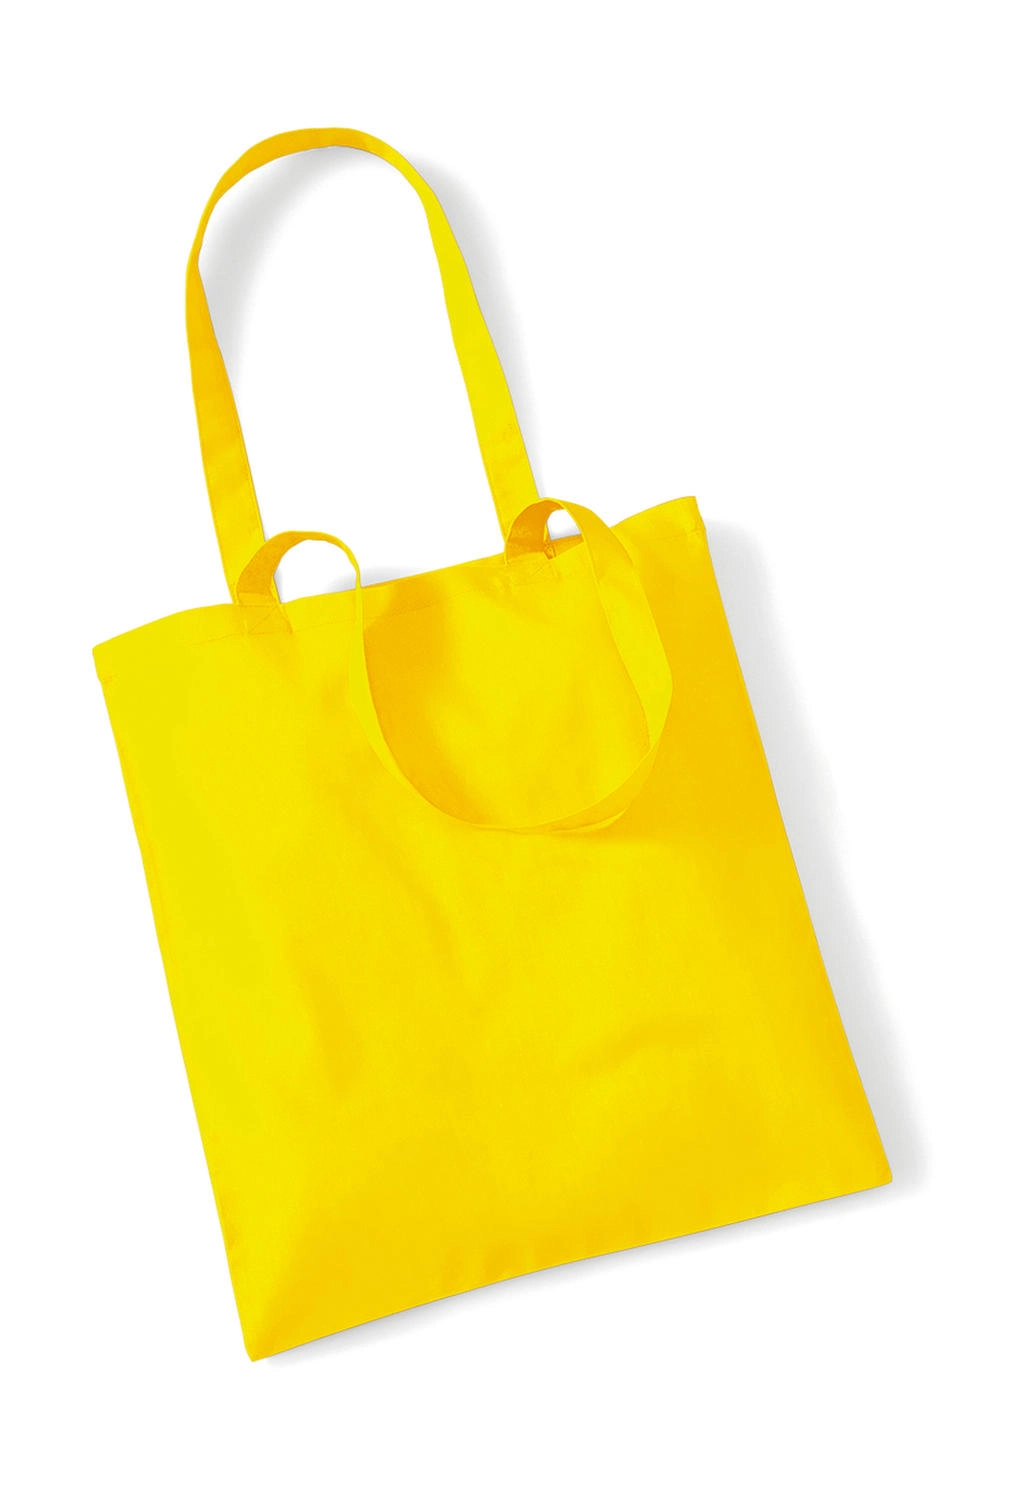 Bag for Life - Long Handles zum Besticken und Bedrucken in der Farbe Yellow mit Ihren Logo, Schriftzug oder Motiv.